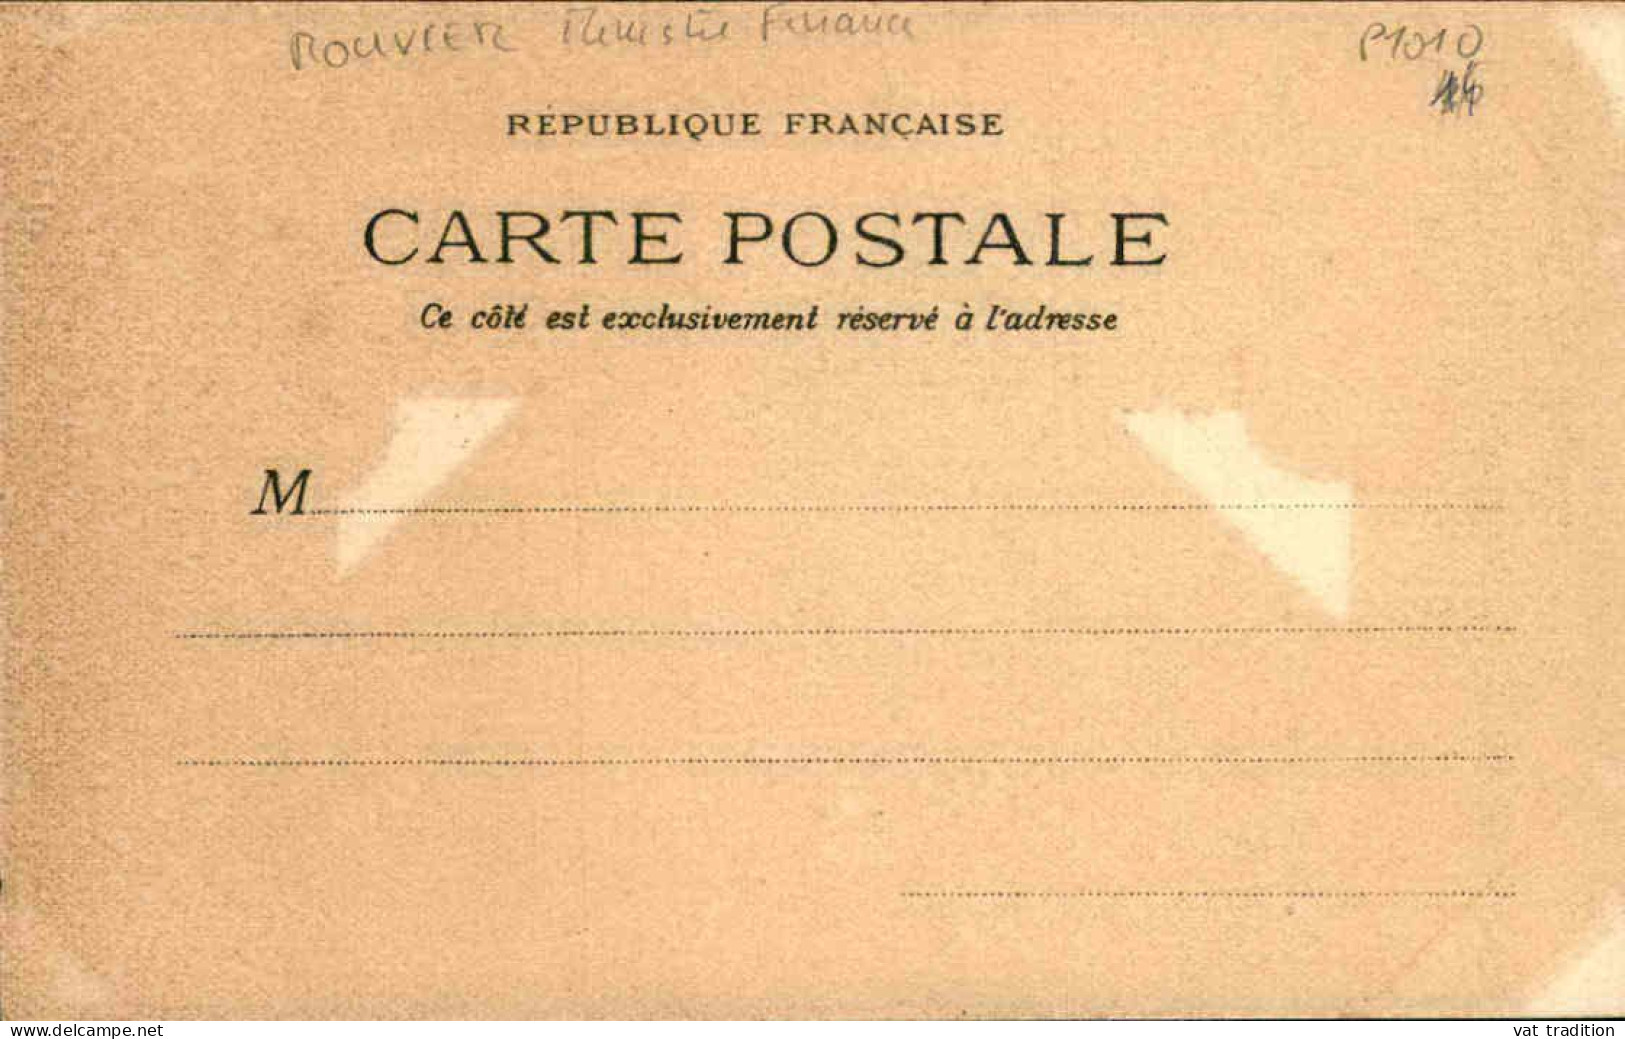 HUMOUR / POLITIQUE  - Carte Postale - Hausse Des Impôts - L 152219 - Humour